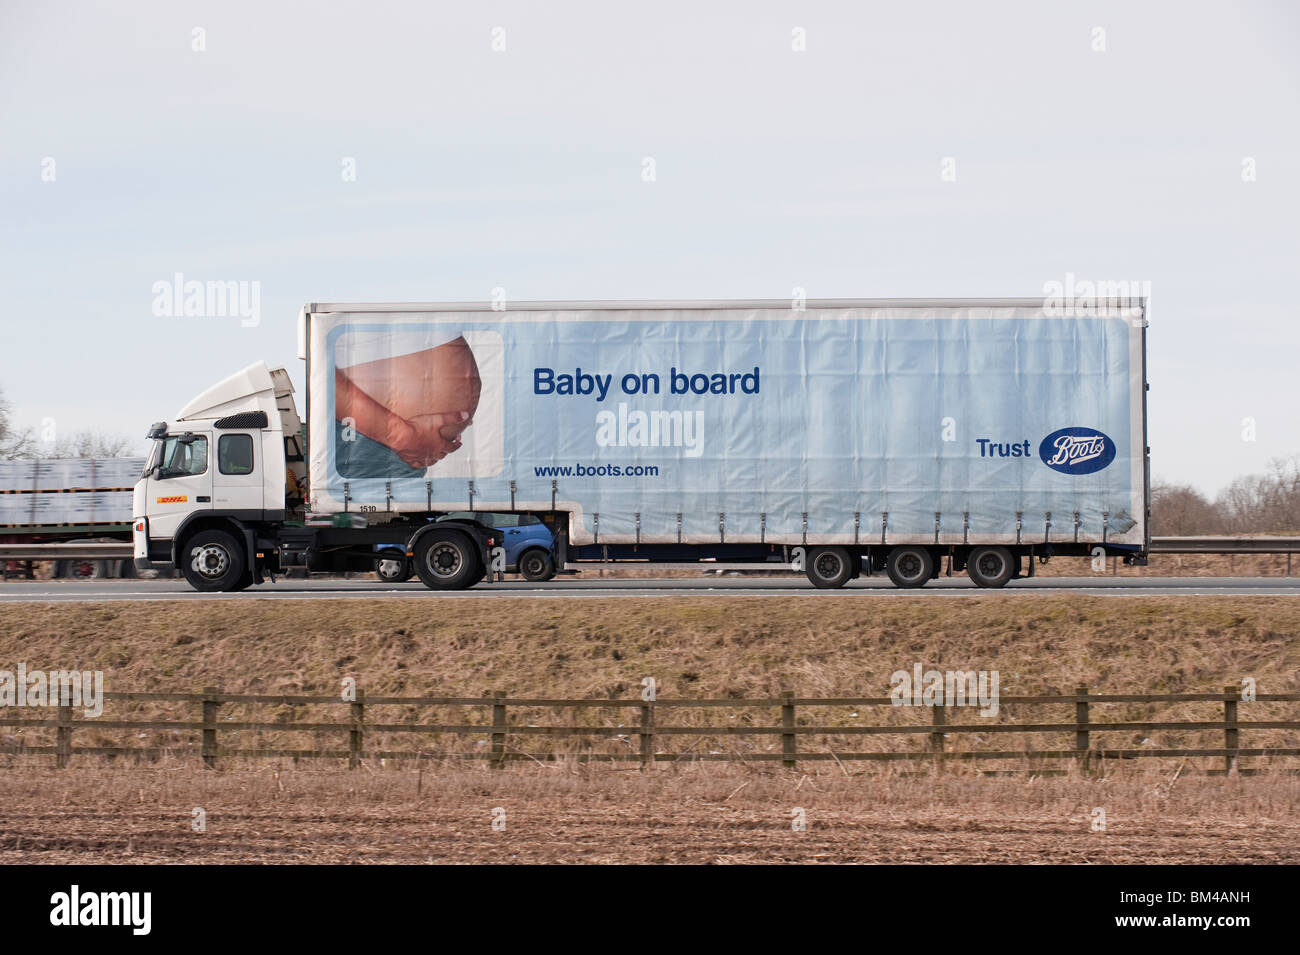 Un camion transportant des marchandises pour les bottes, voyageant le long d'une autoroute. Banque D'Images